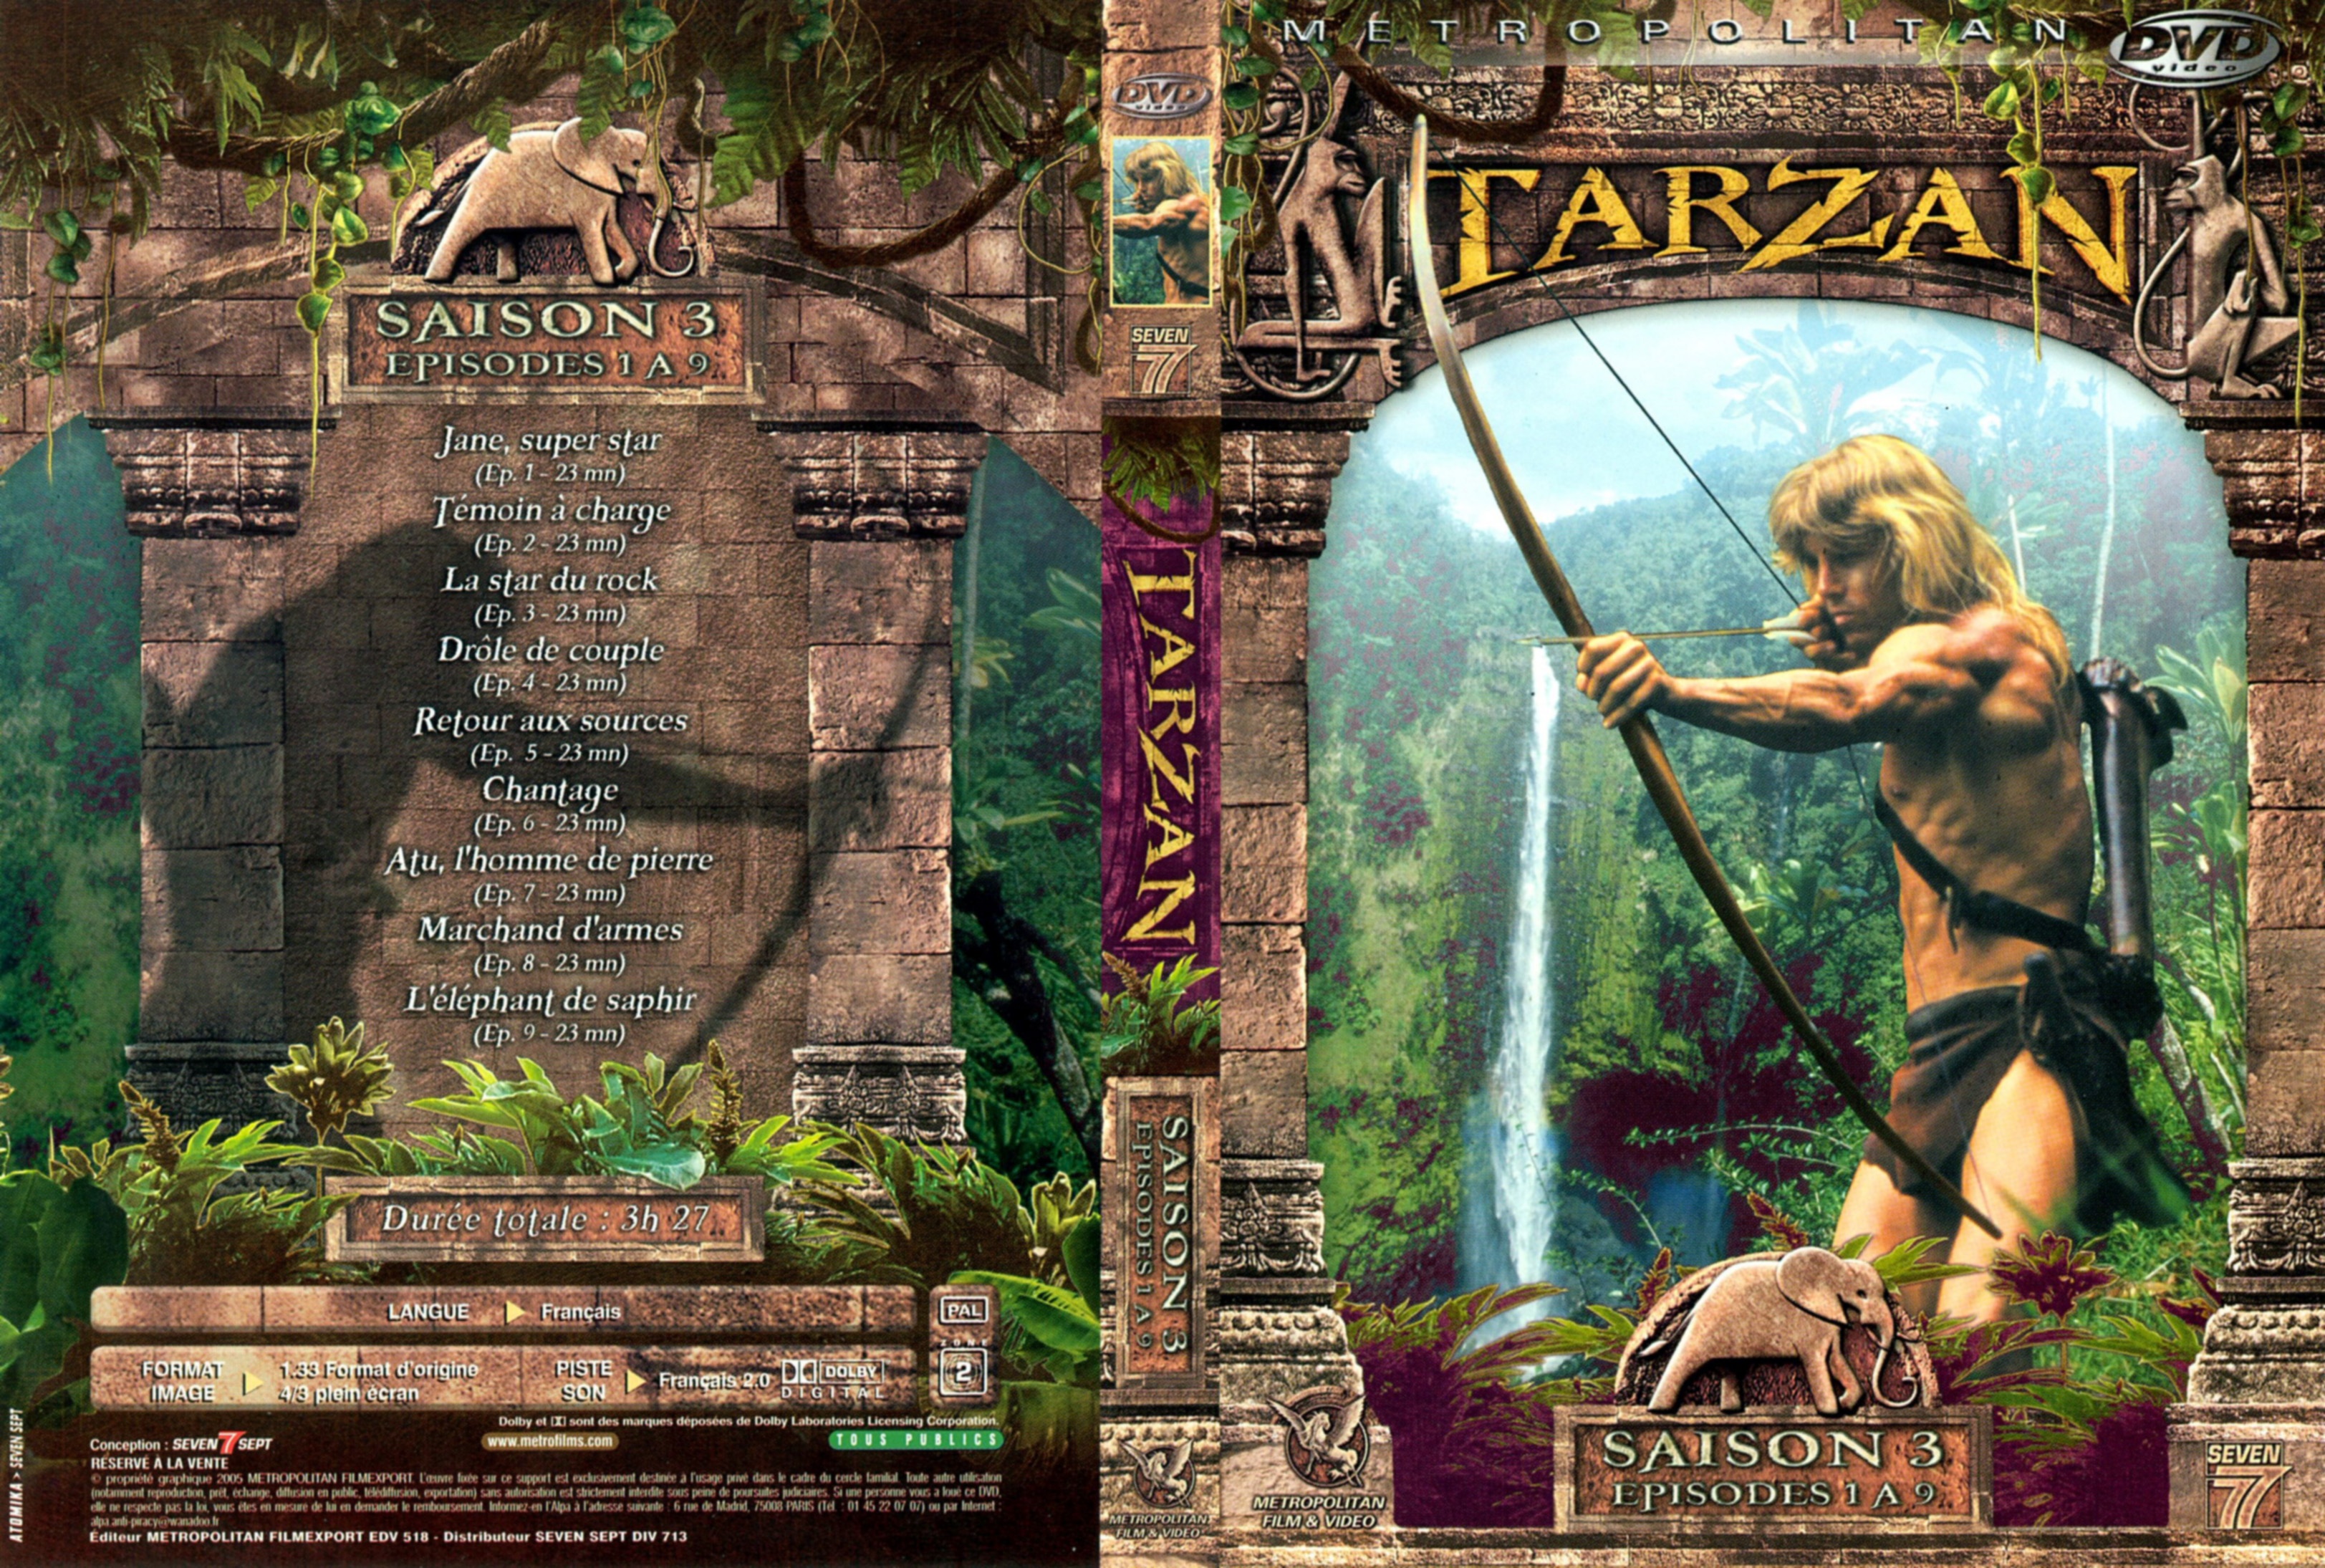 Jaquette DVD Tarzan saison 3 DVD 1